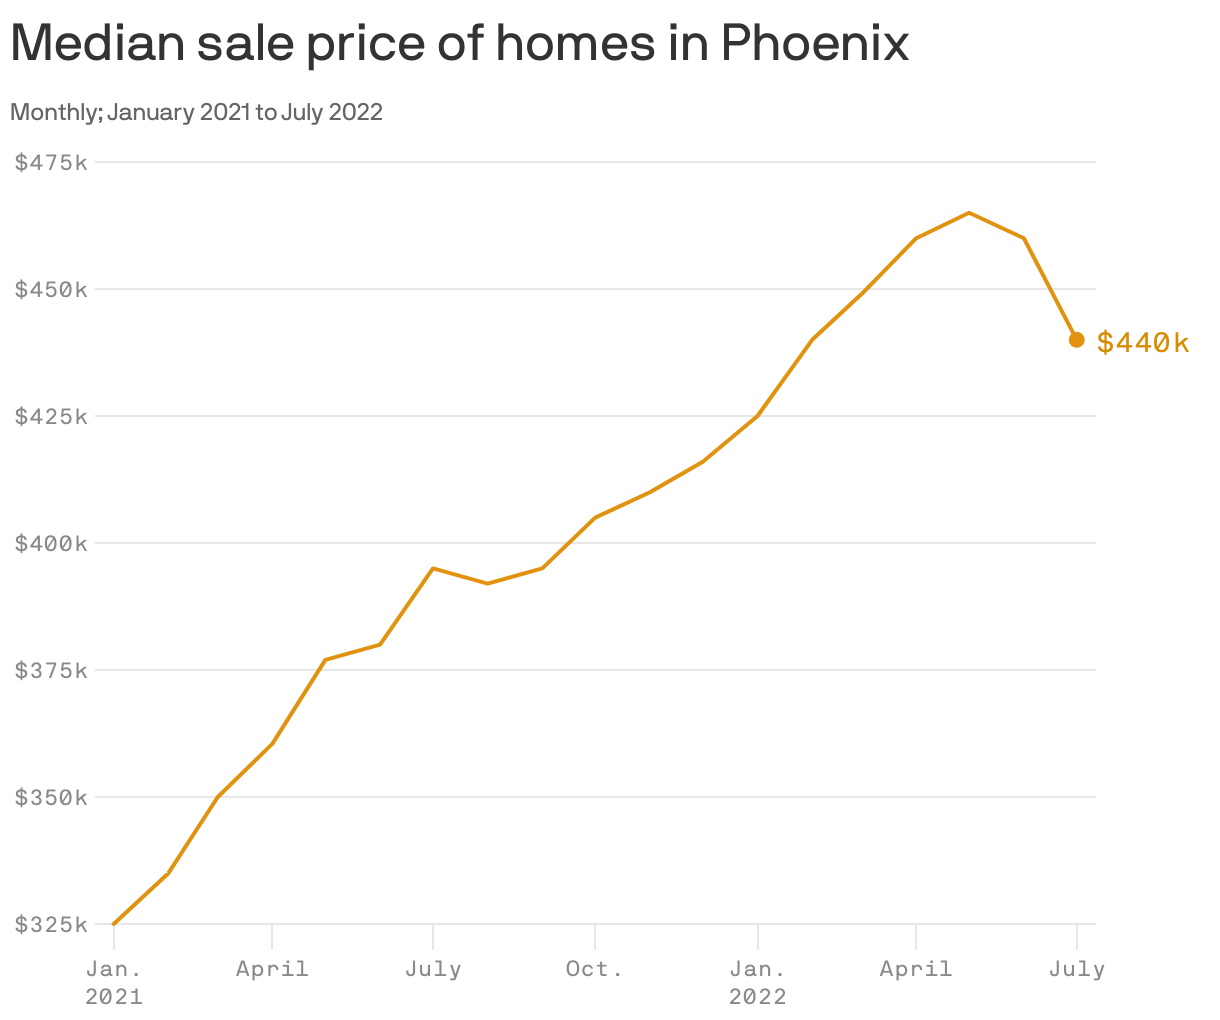 Median sale price of homes in Phoenix